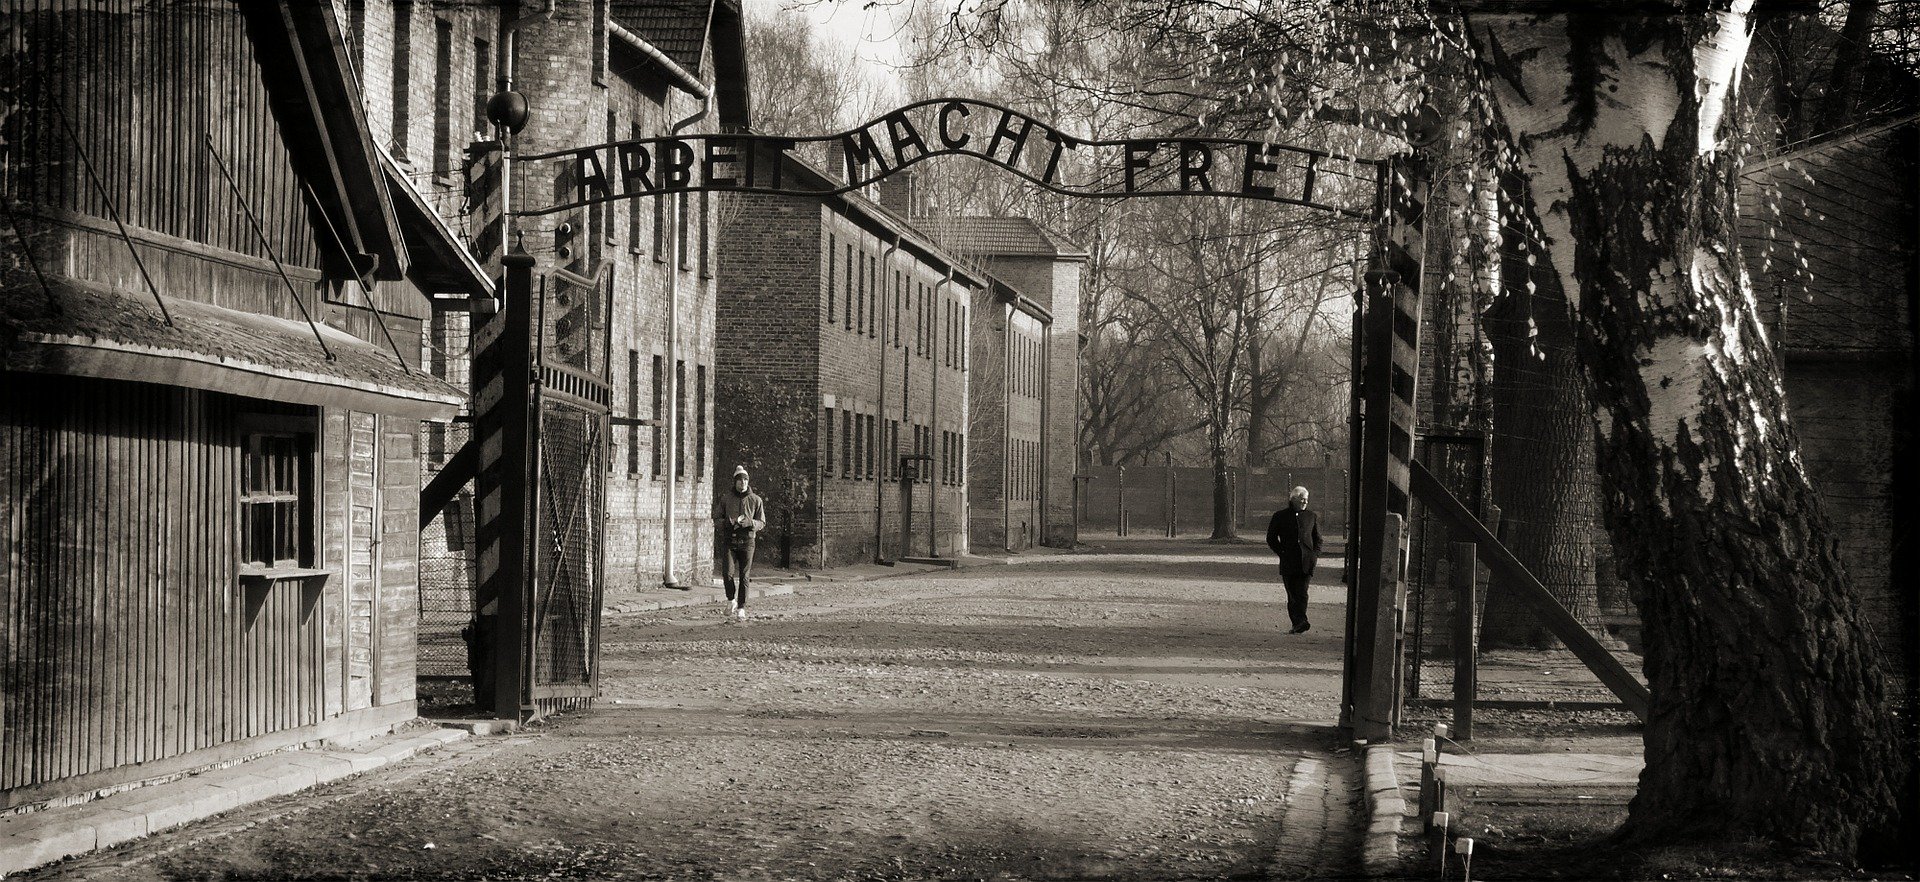 Brama w Auschwitz-Birkenau z napisem "Arbeit macht frei"